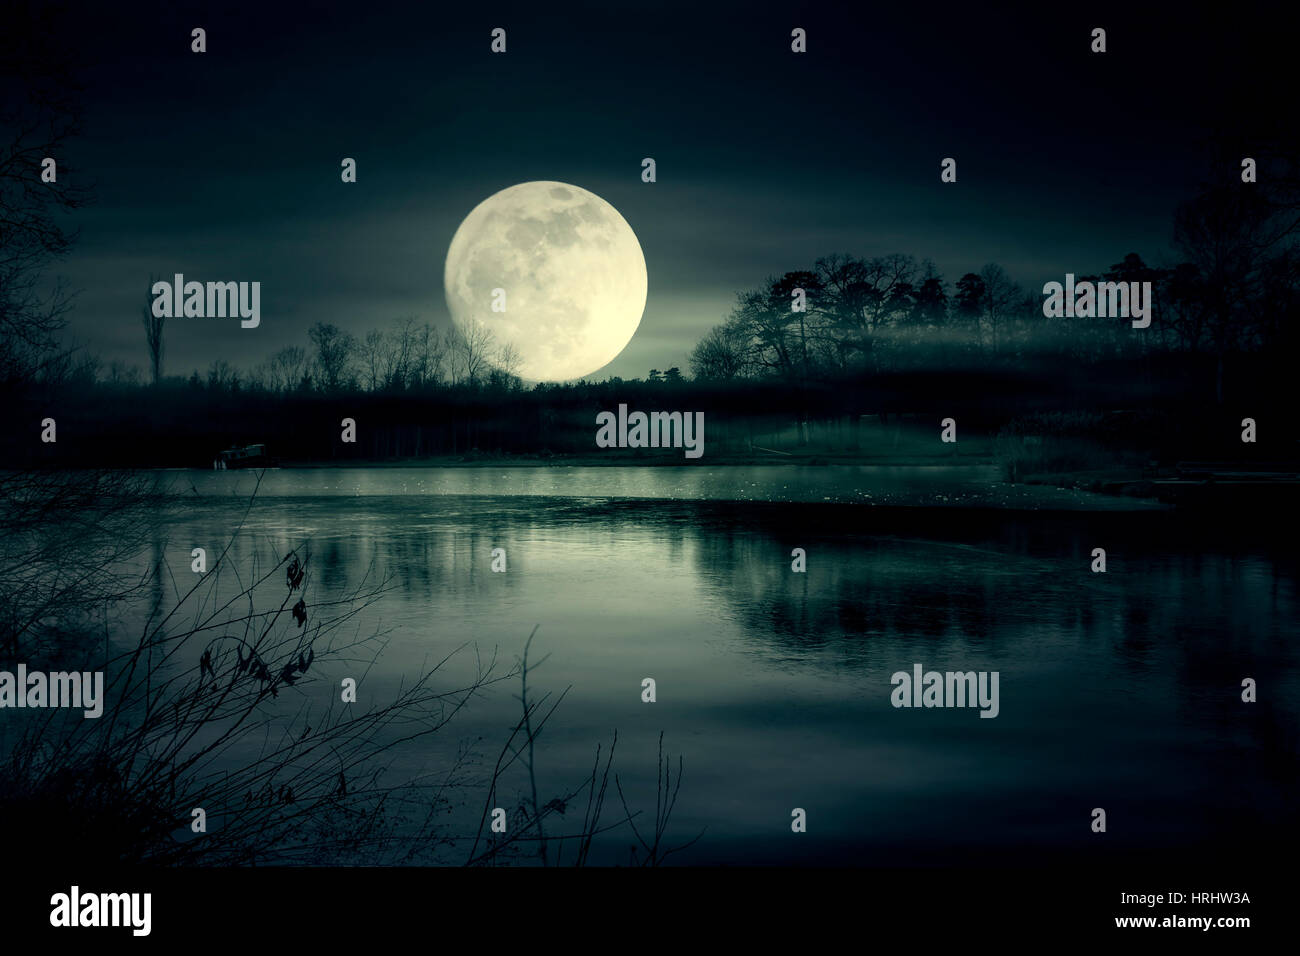 Super moon and lake at night Stock Photo